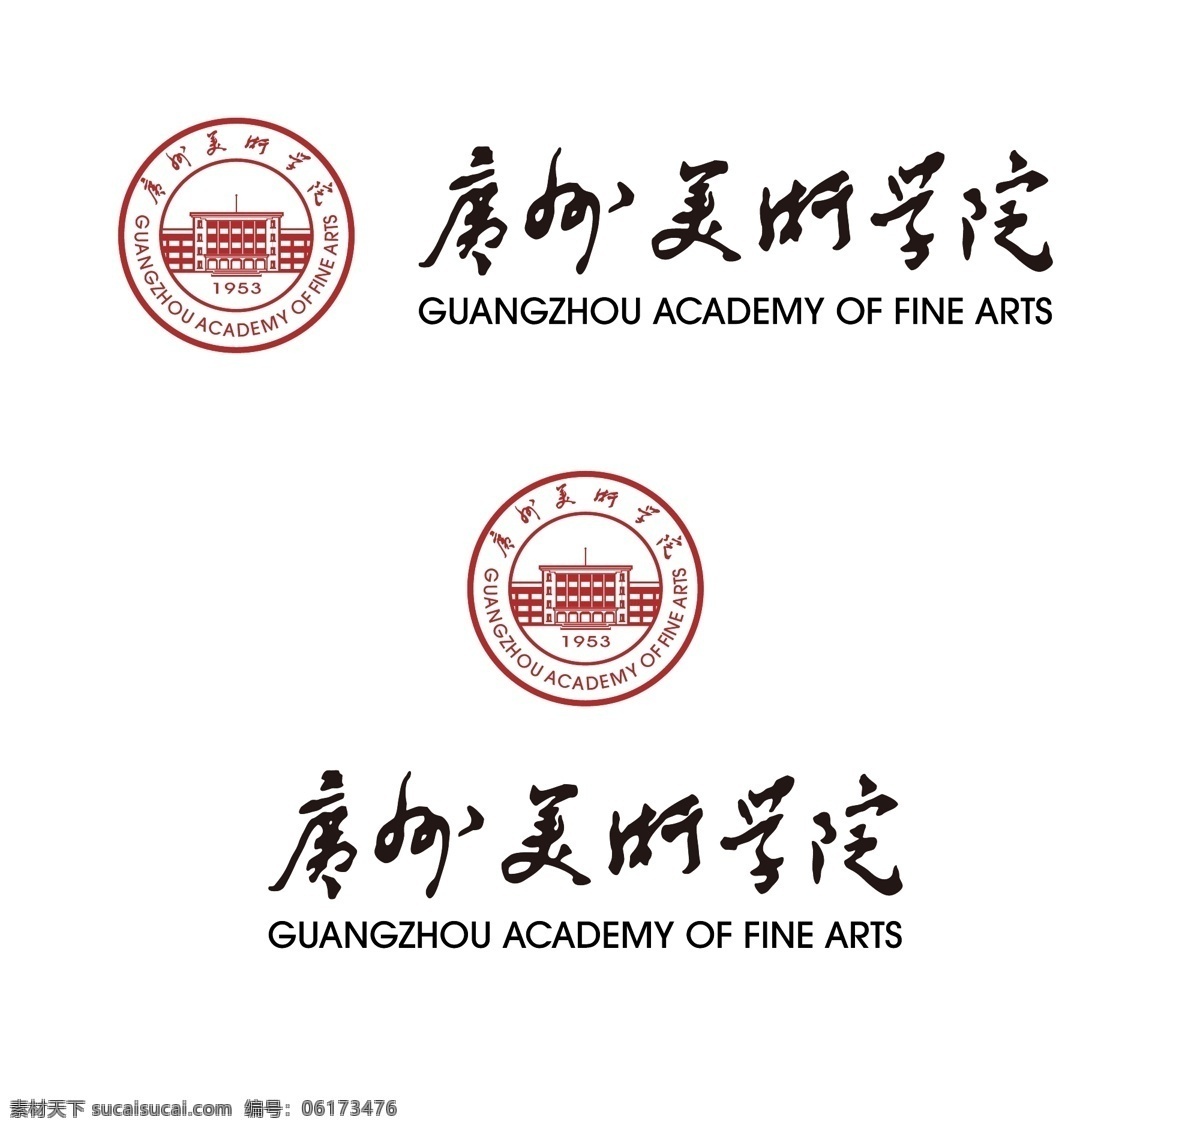 广州美术学院 院 徽 新版 广州美院 院徽 徽标 标志 logo 艺术名校校徽 标志图标 其他图标